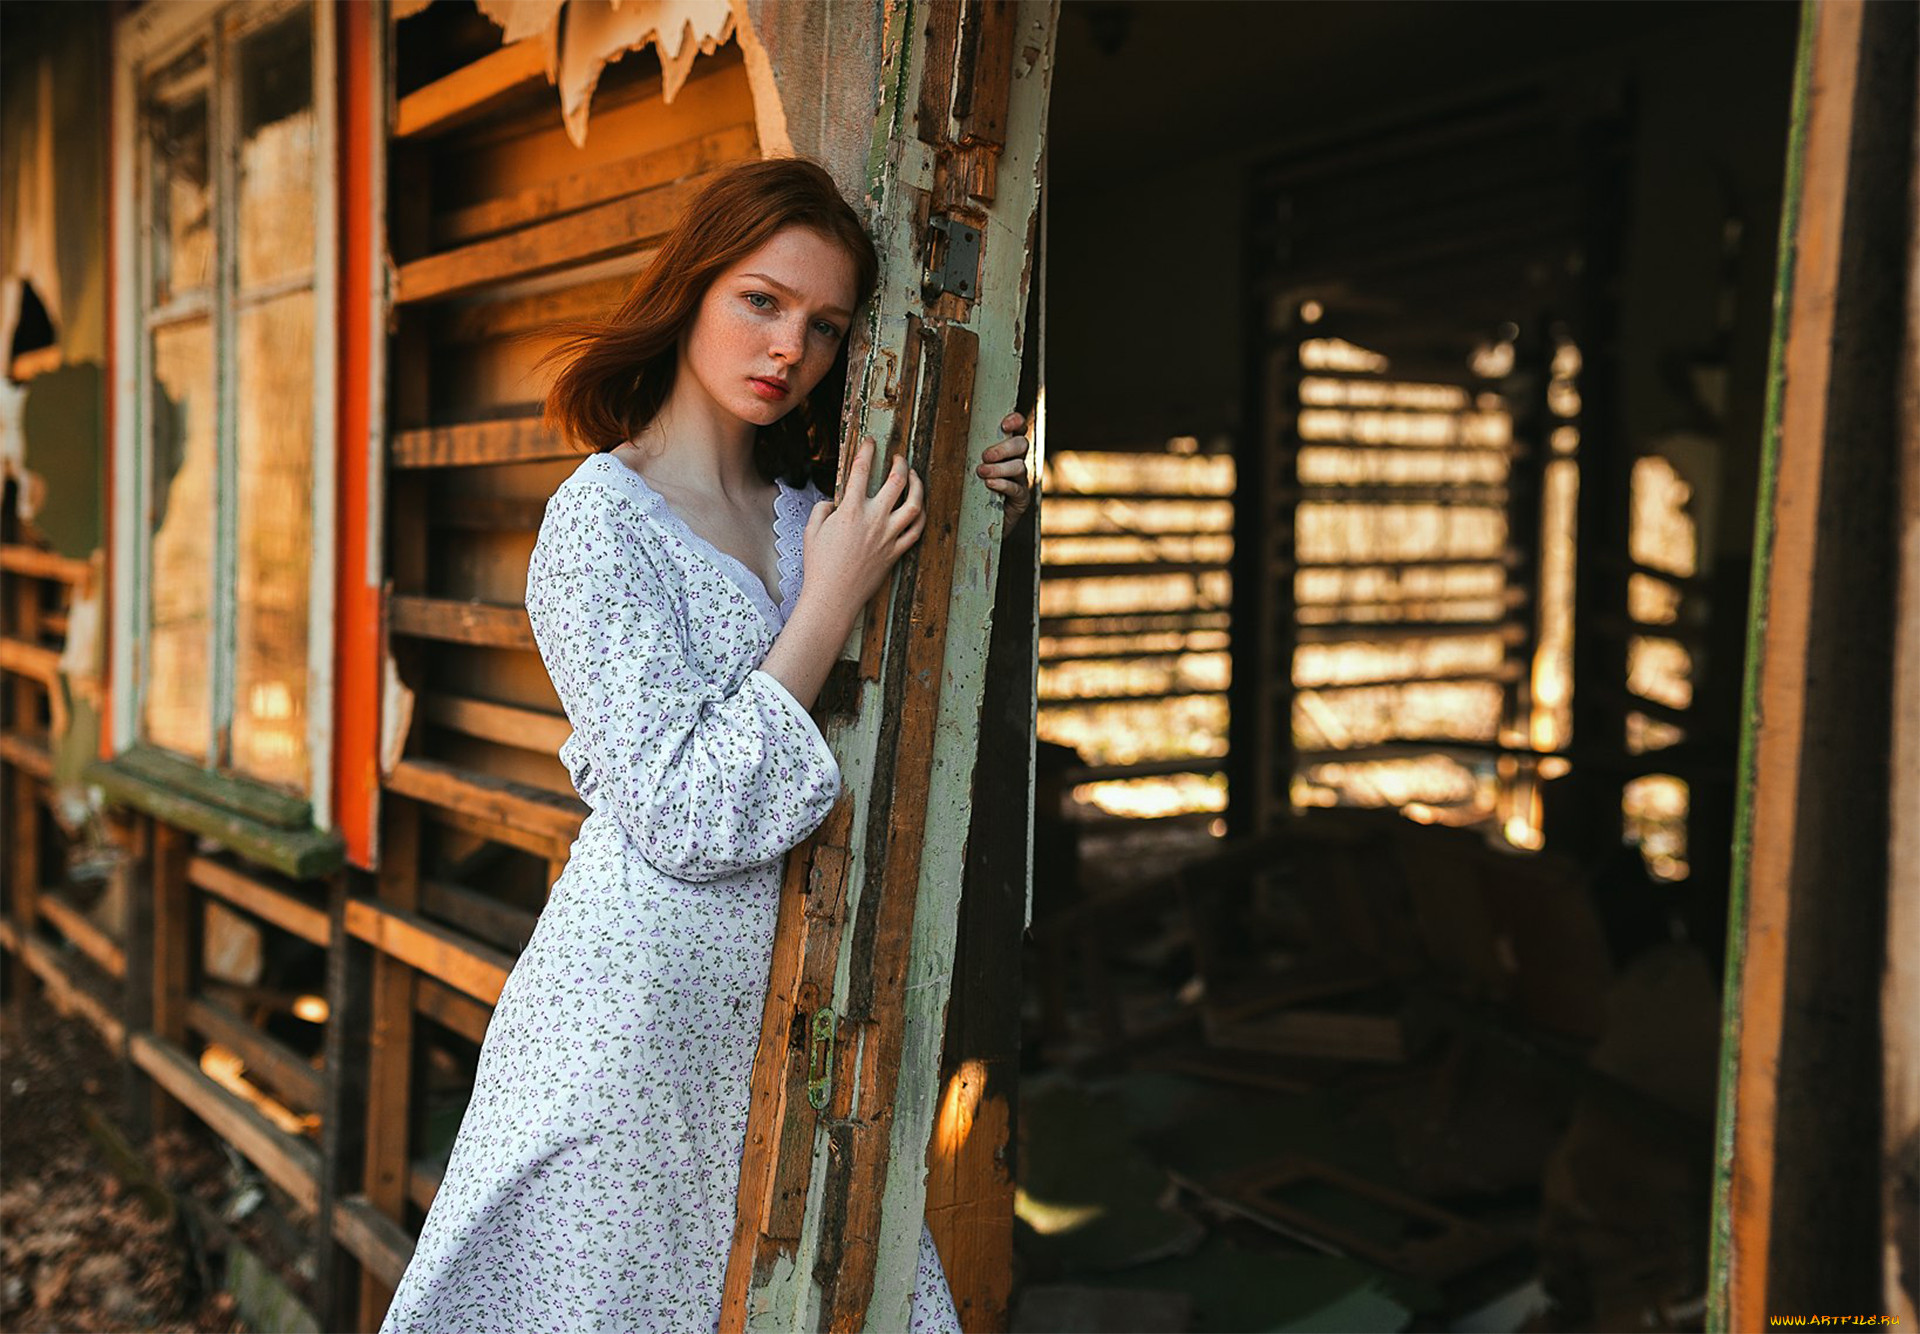 Хочу женщину в деревне. Фотограф Sergey Nevzorov. Деревенские женщины. Девушки в деревне. Простая деревенская девушка.